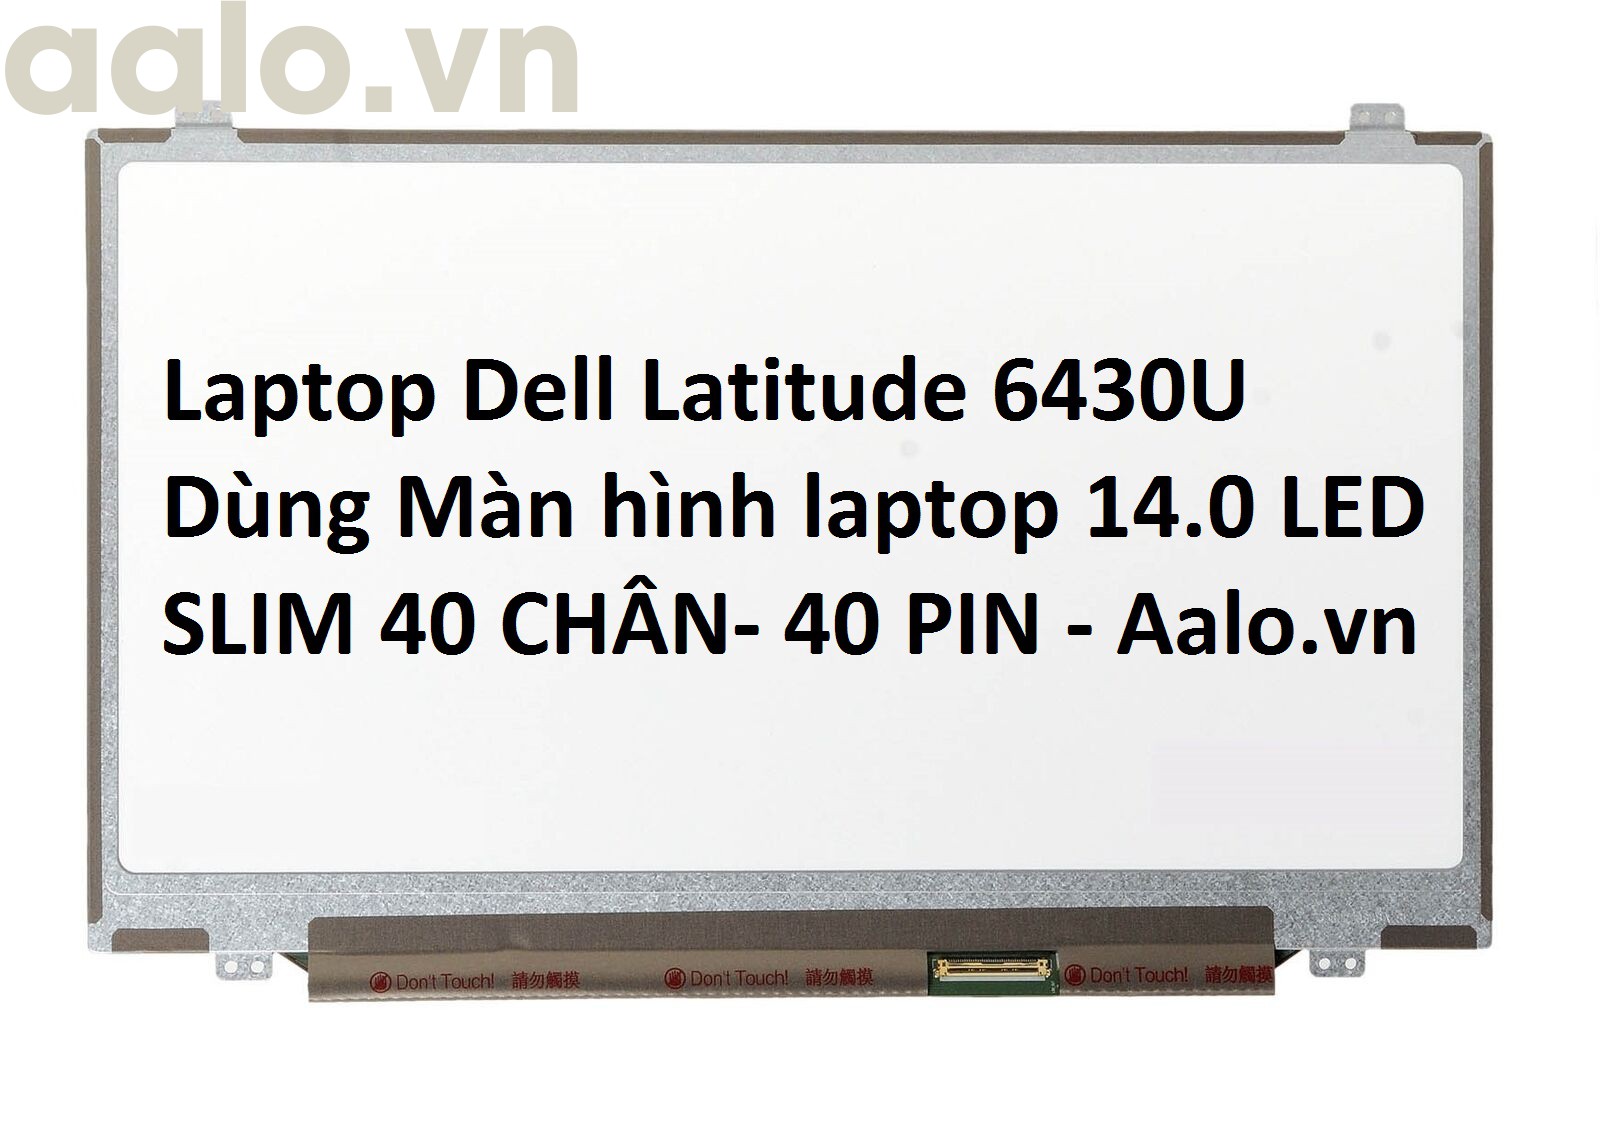 Màn hình Laptop Dell Latitude 6430U